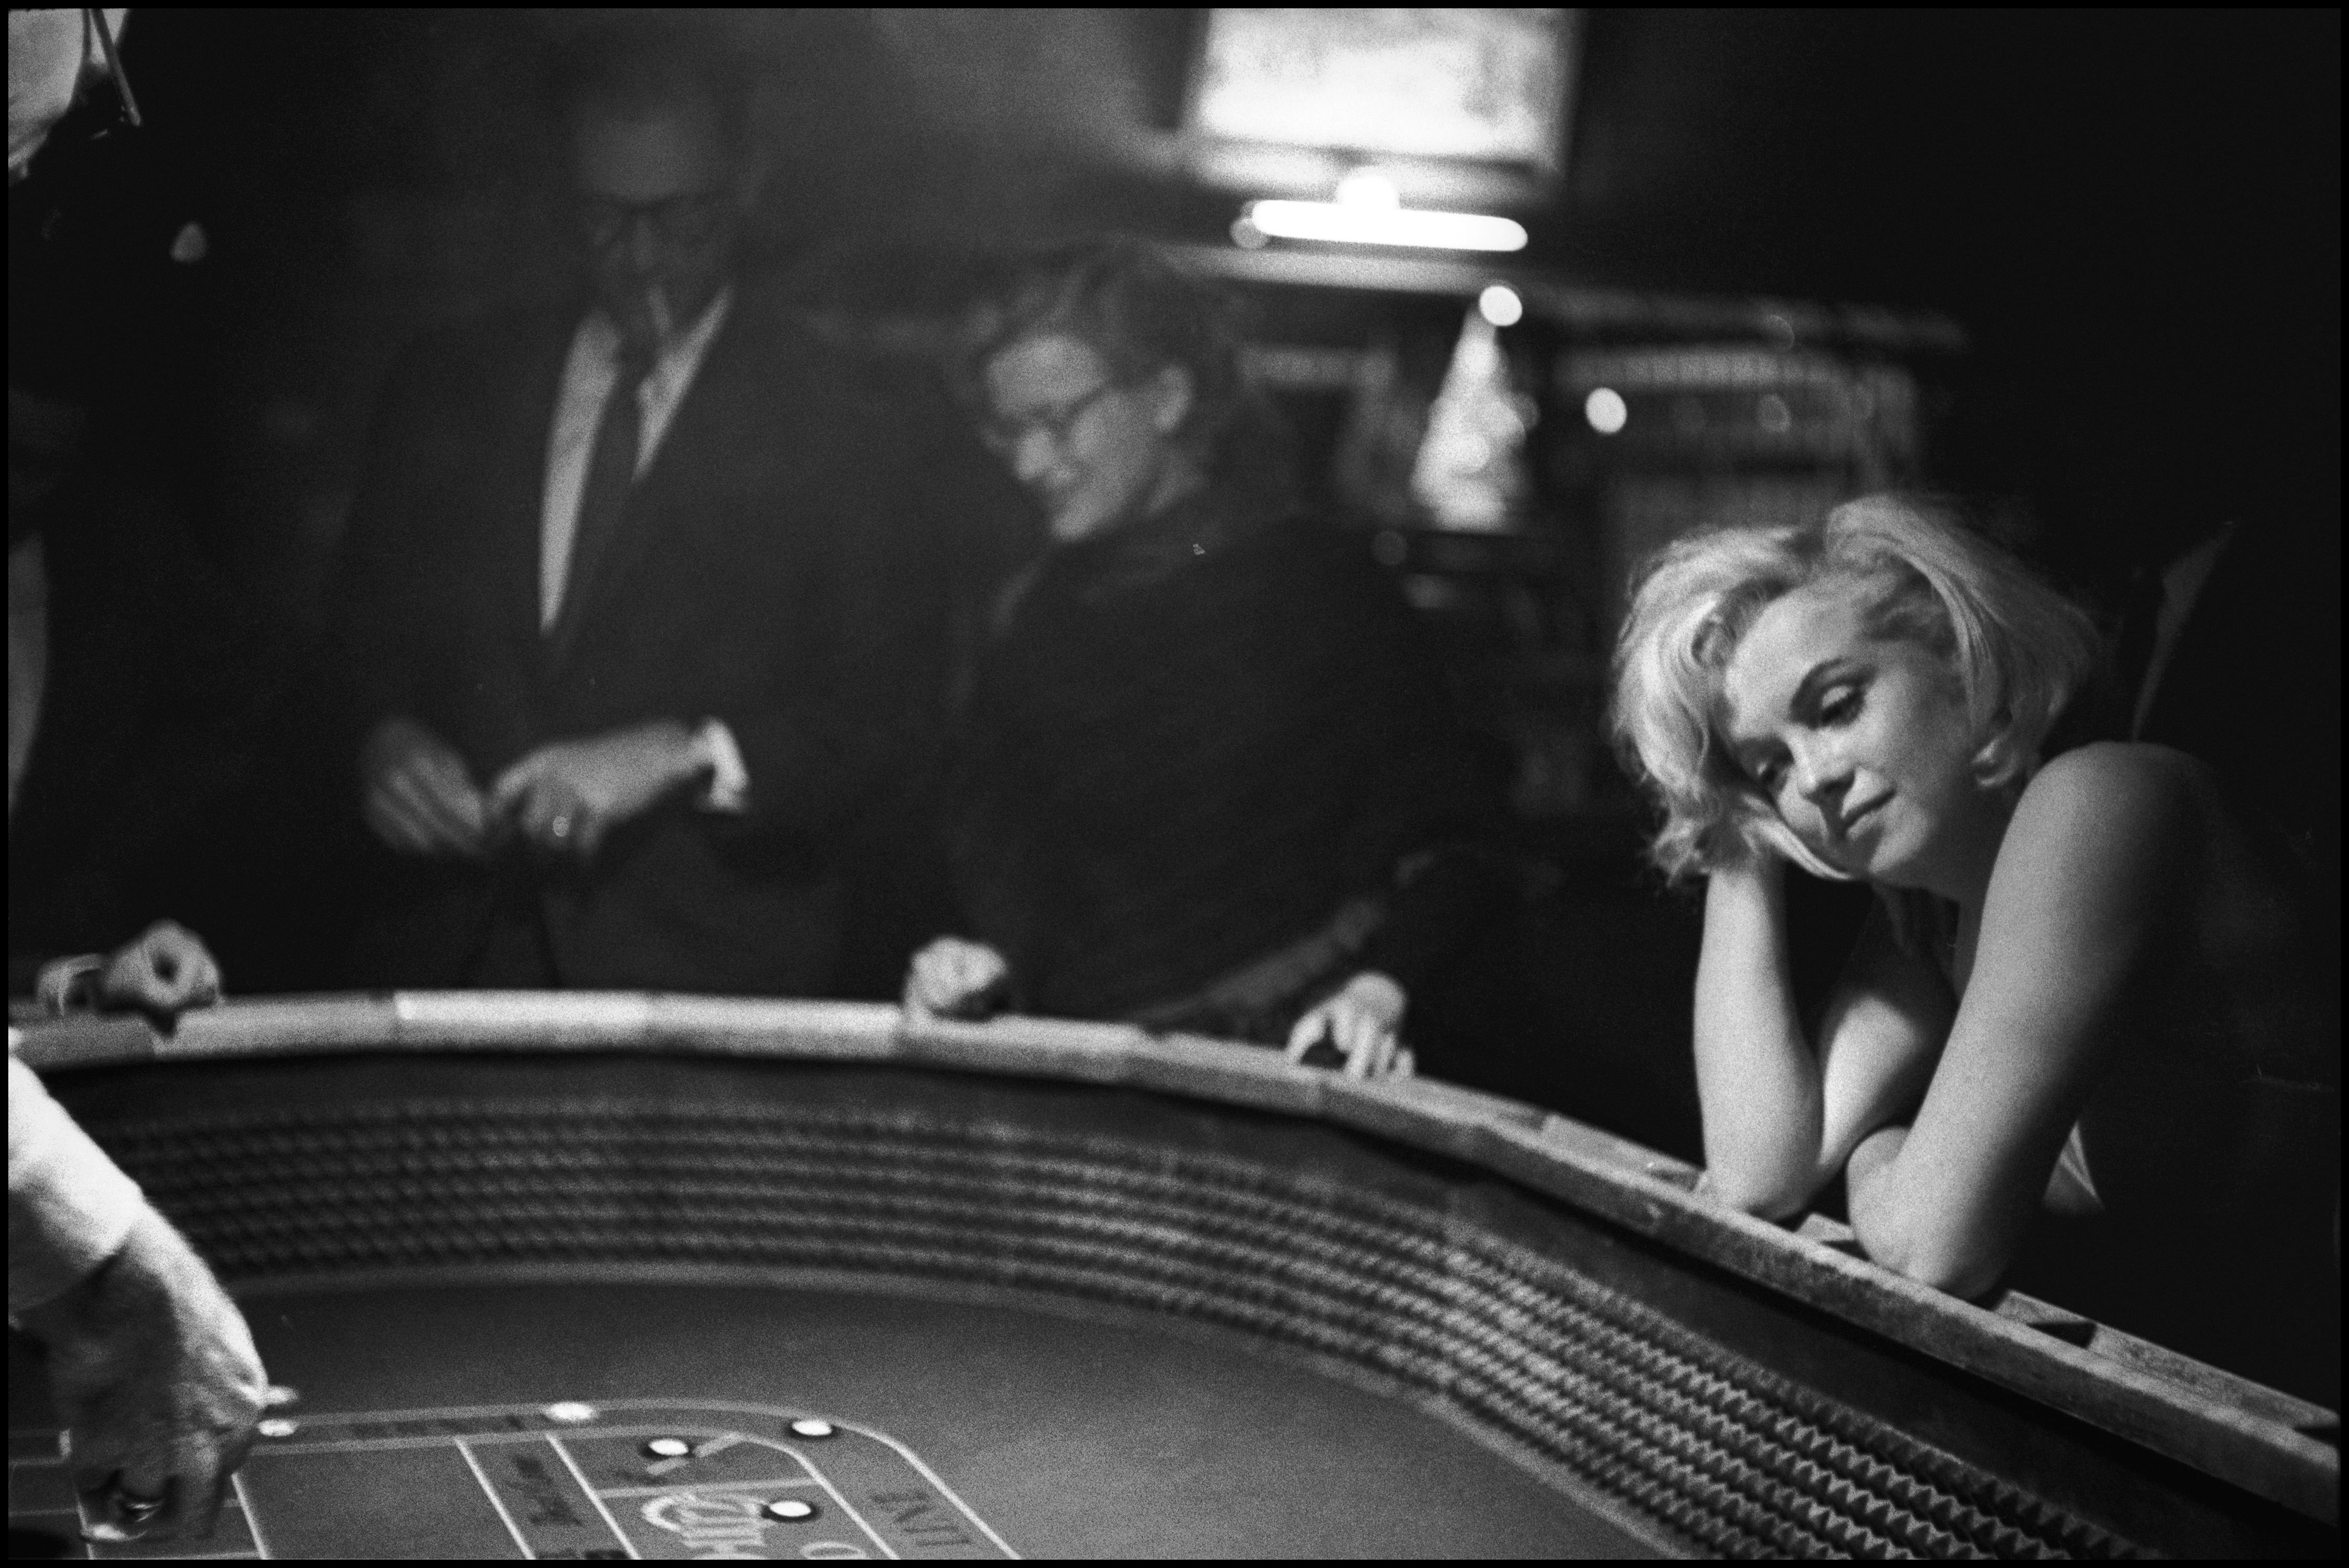 Marilyn Monroe am Set von "The Misfits", Reno, Nevada, 1960.

Alle verfügbaren Größen und Ausgaben:
20" x 24", Auflage 25 + 3 Probedrucke
24" x 34", Auflage 25 + 3 Probedrucke

"Eve Arnold, 1912 als Tochter russischer Einwanderer in Philadelphia